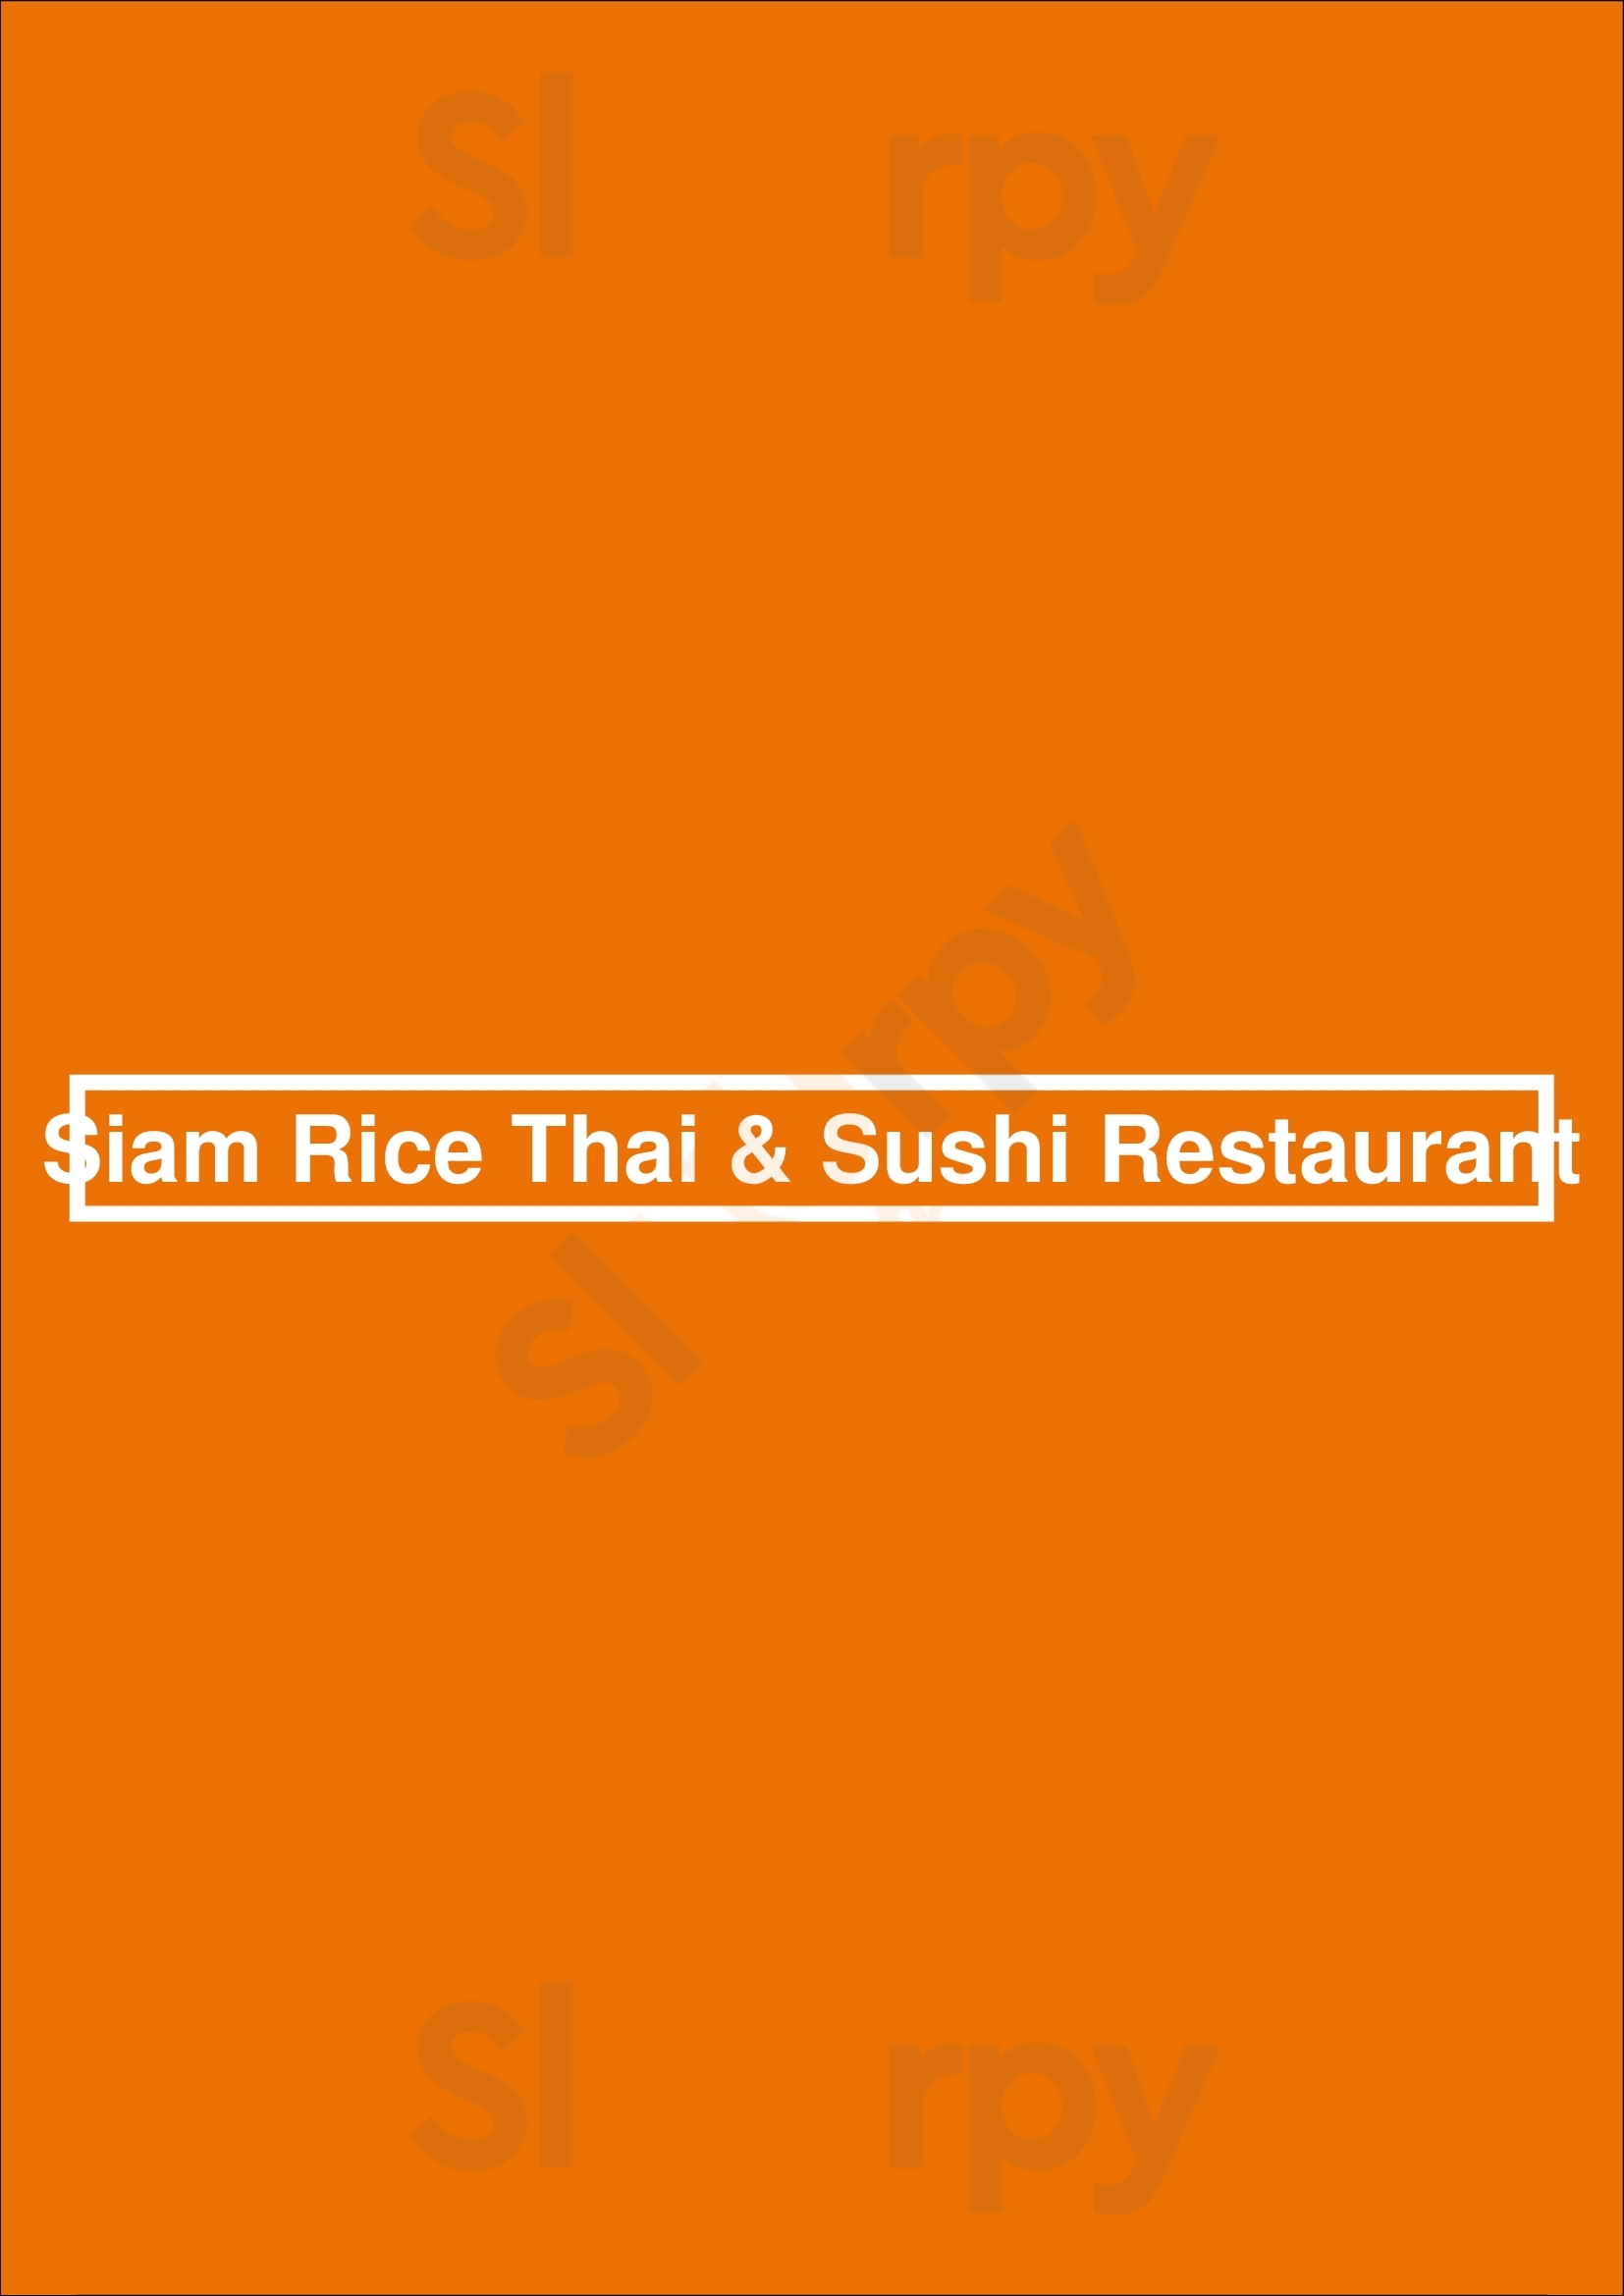 Siam Rice Thai & Sushi Restaurant Miami Menu - 1